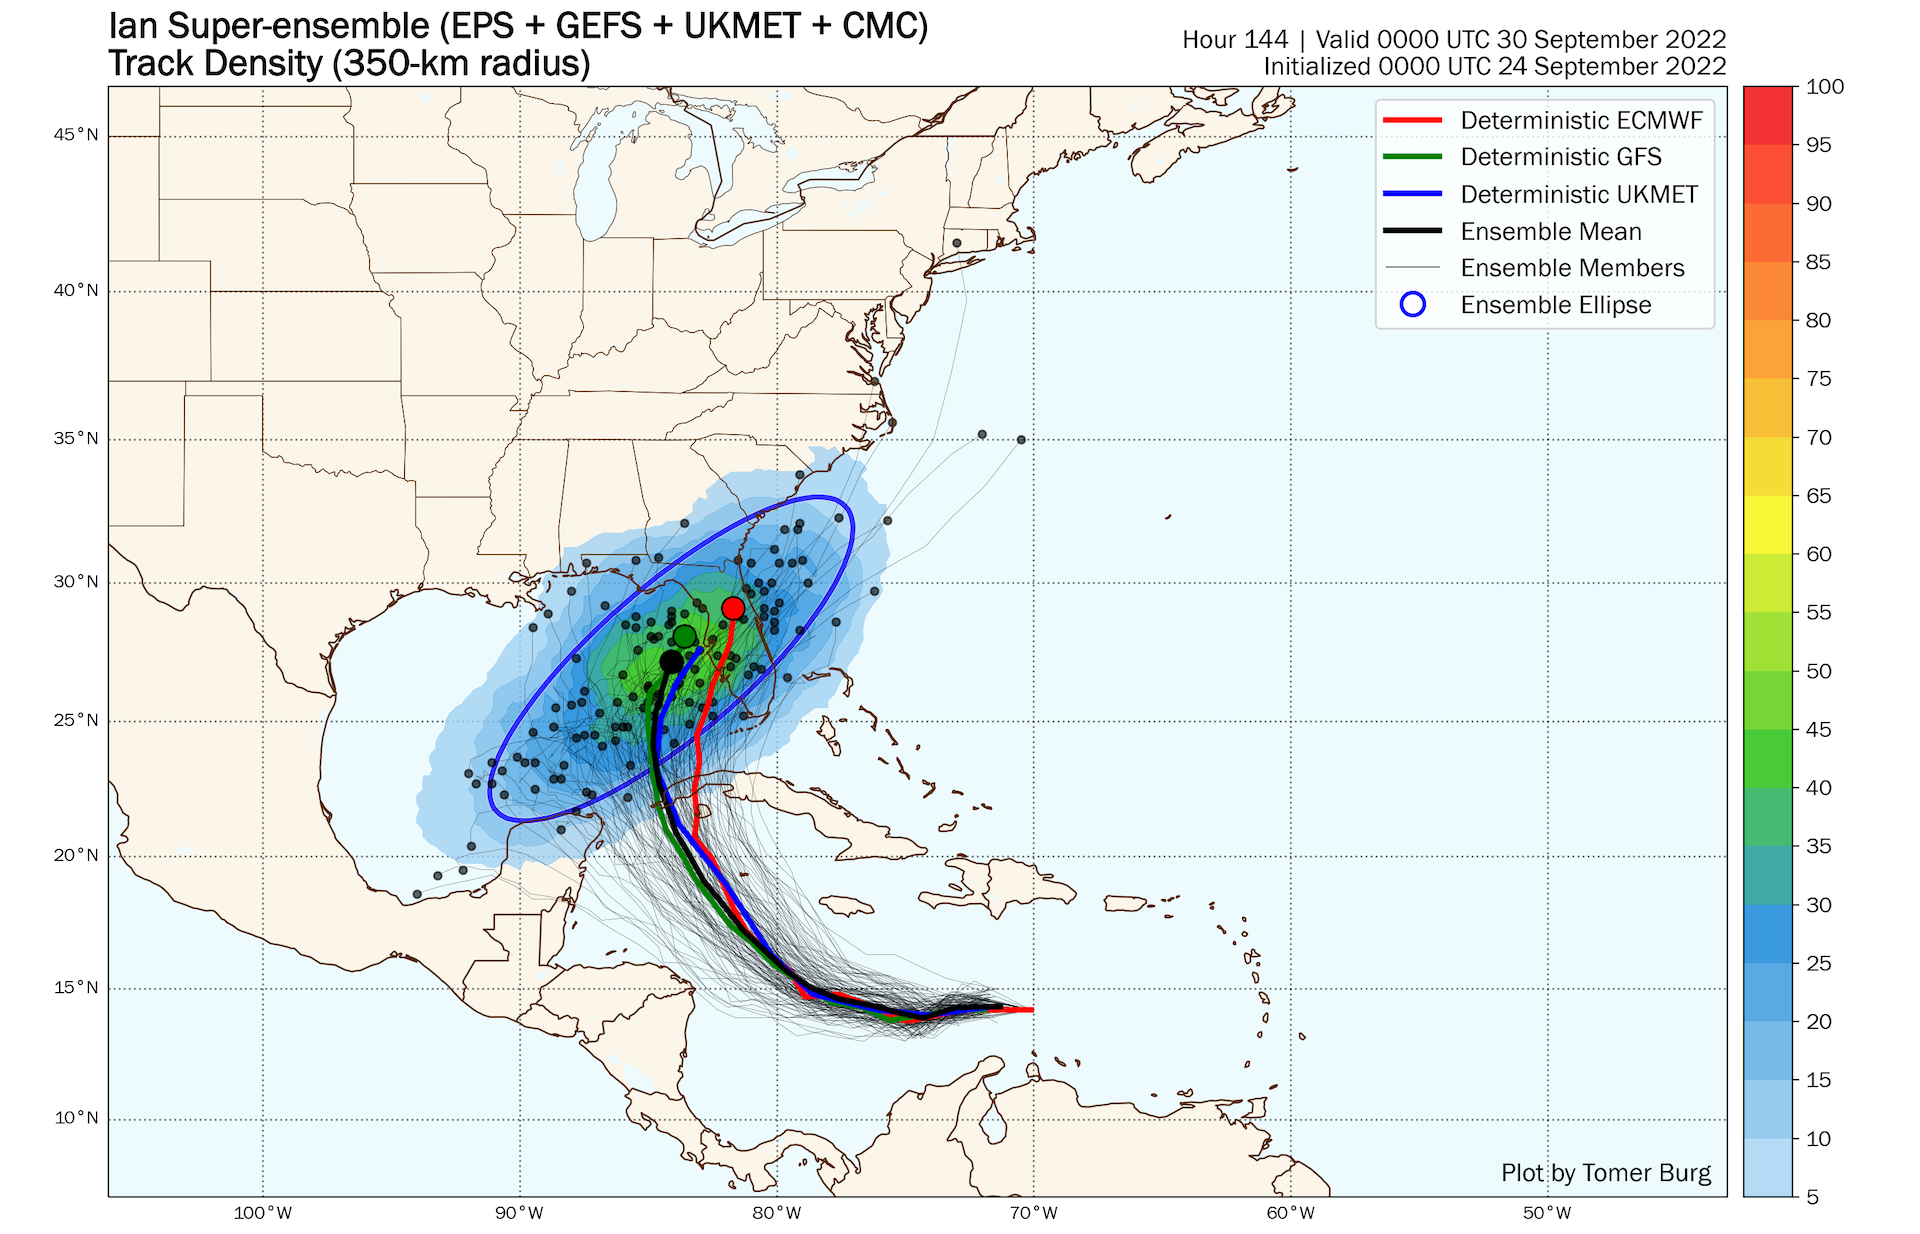 Proyecciones de modelos informáticos para la tormenta tropical Ian a partir del 24 de septiembre.